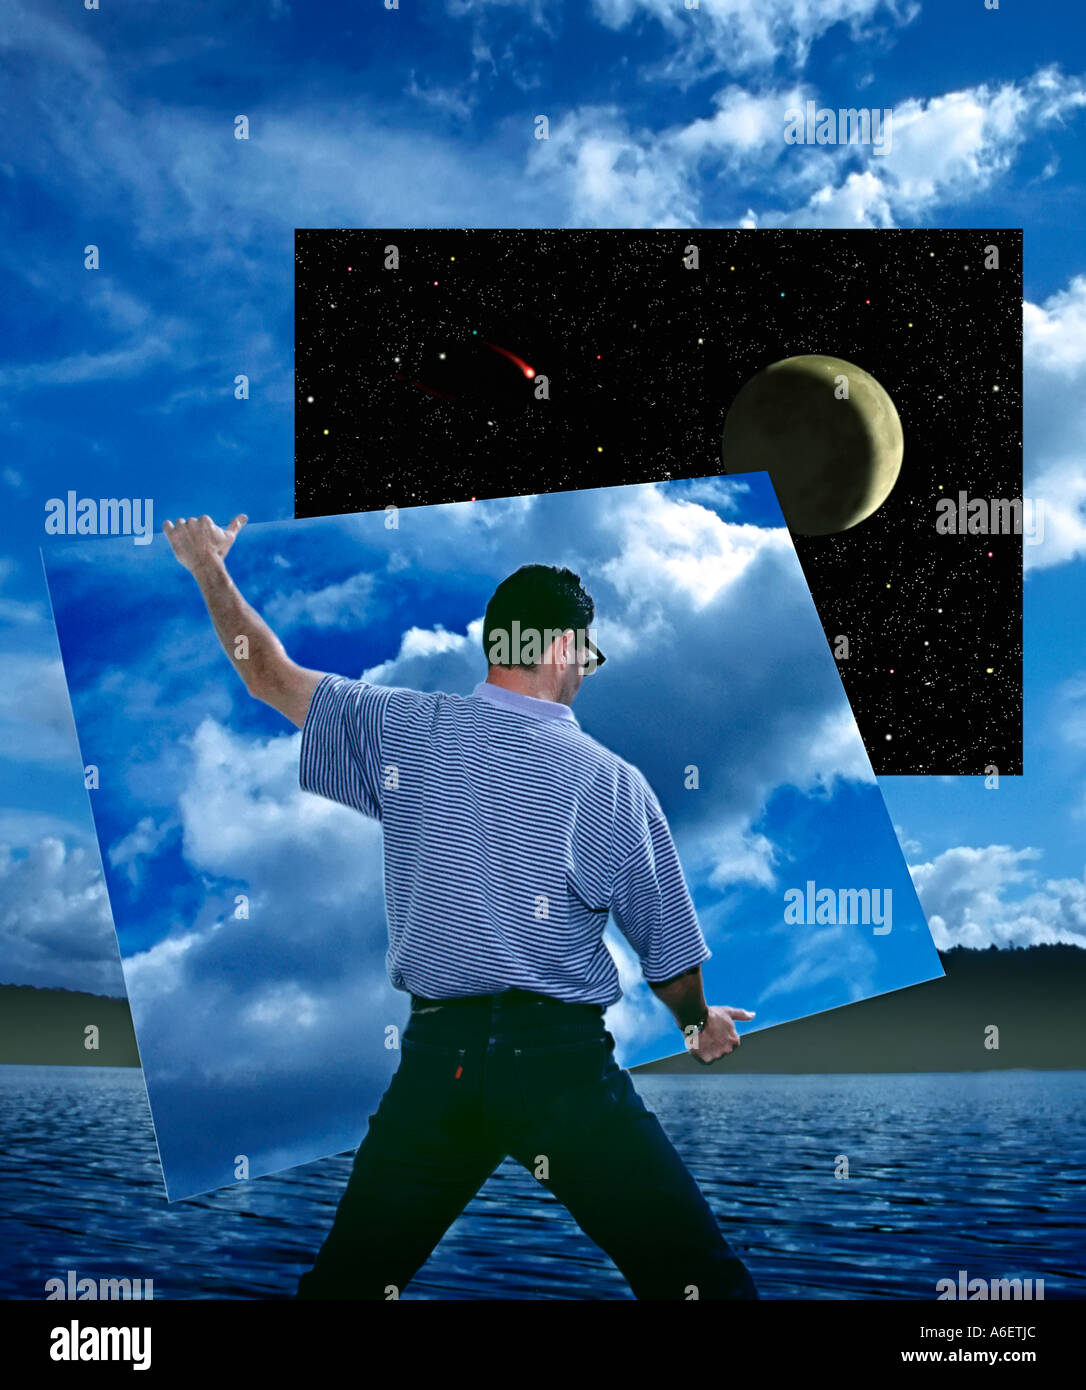 Digitale fotografische Illustration zeigt Person entfernen-Abschnitt der Taghimmel um den Nachthimmel zu offenbaren Stockfoto